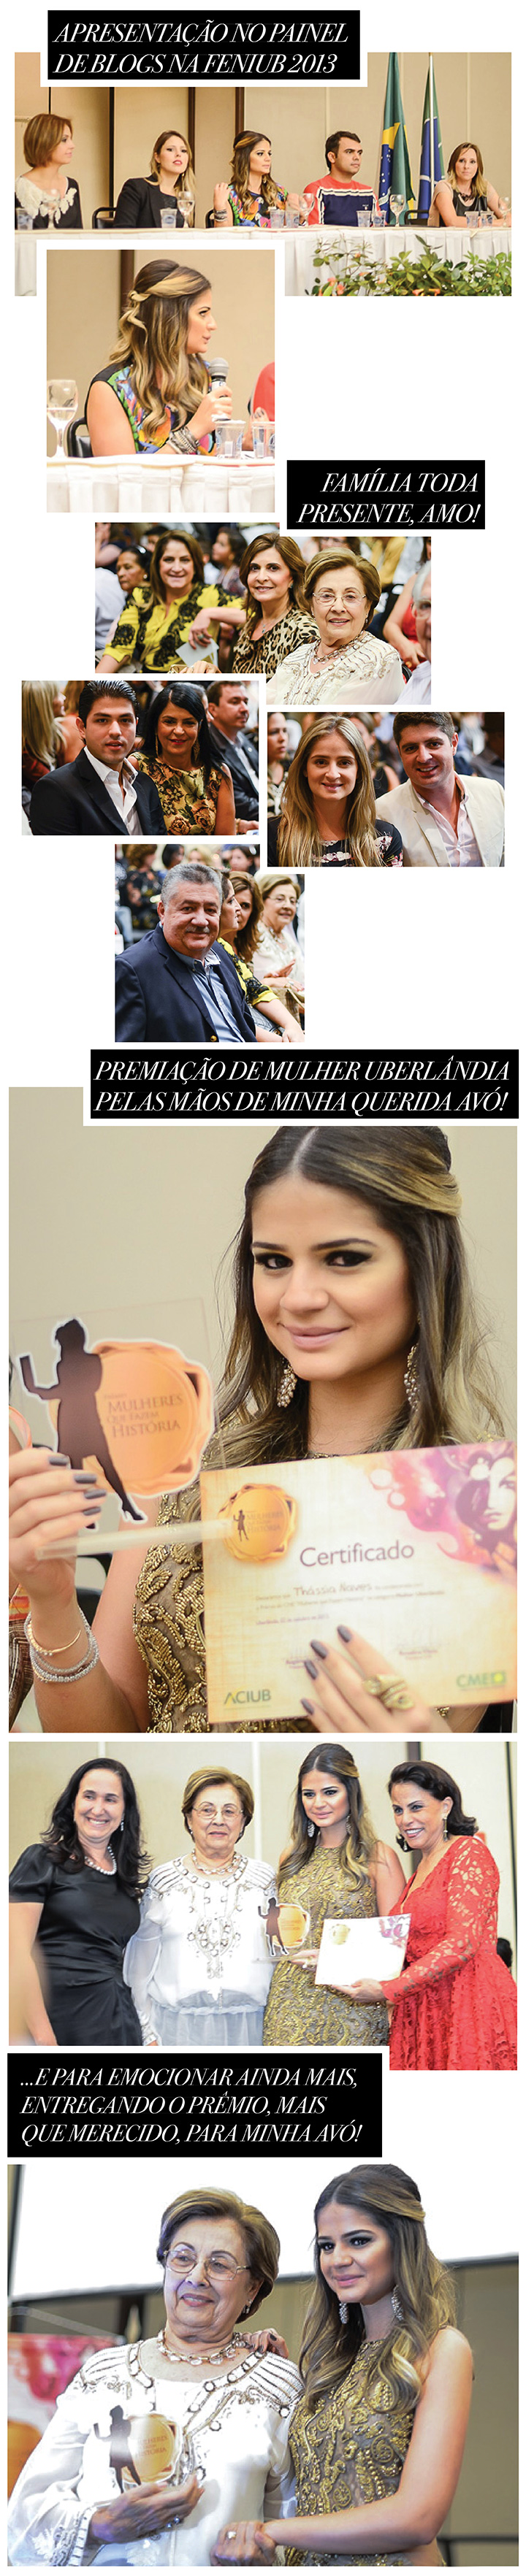 PremiaçãoFeniub2013